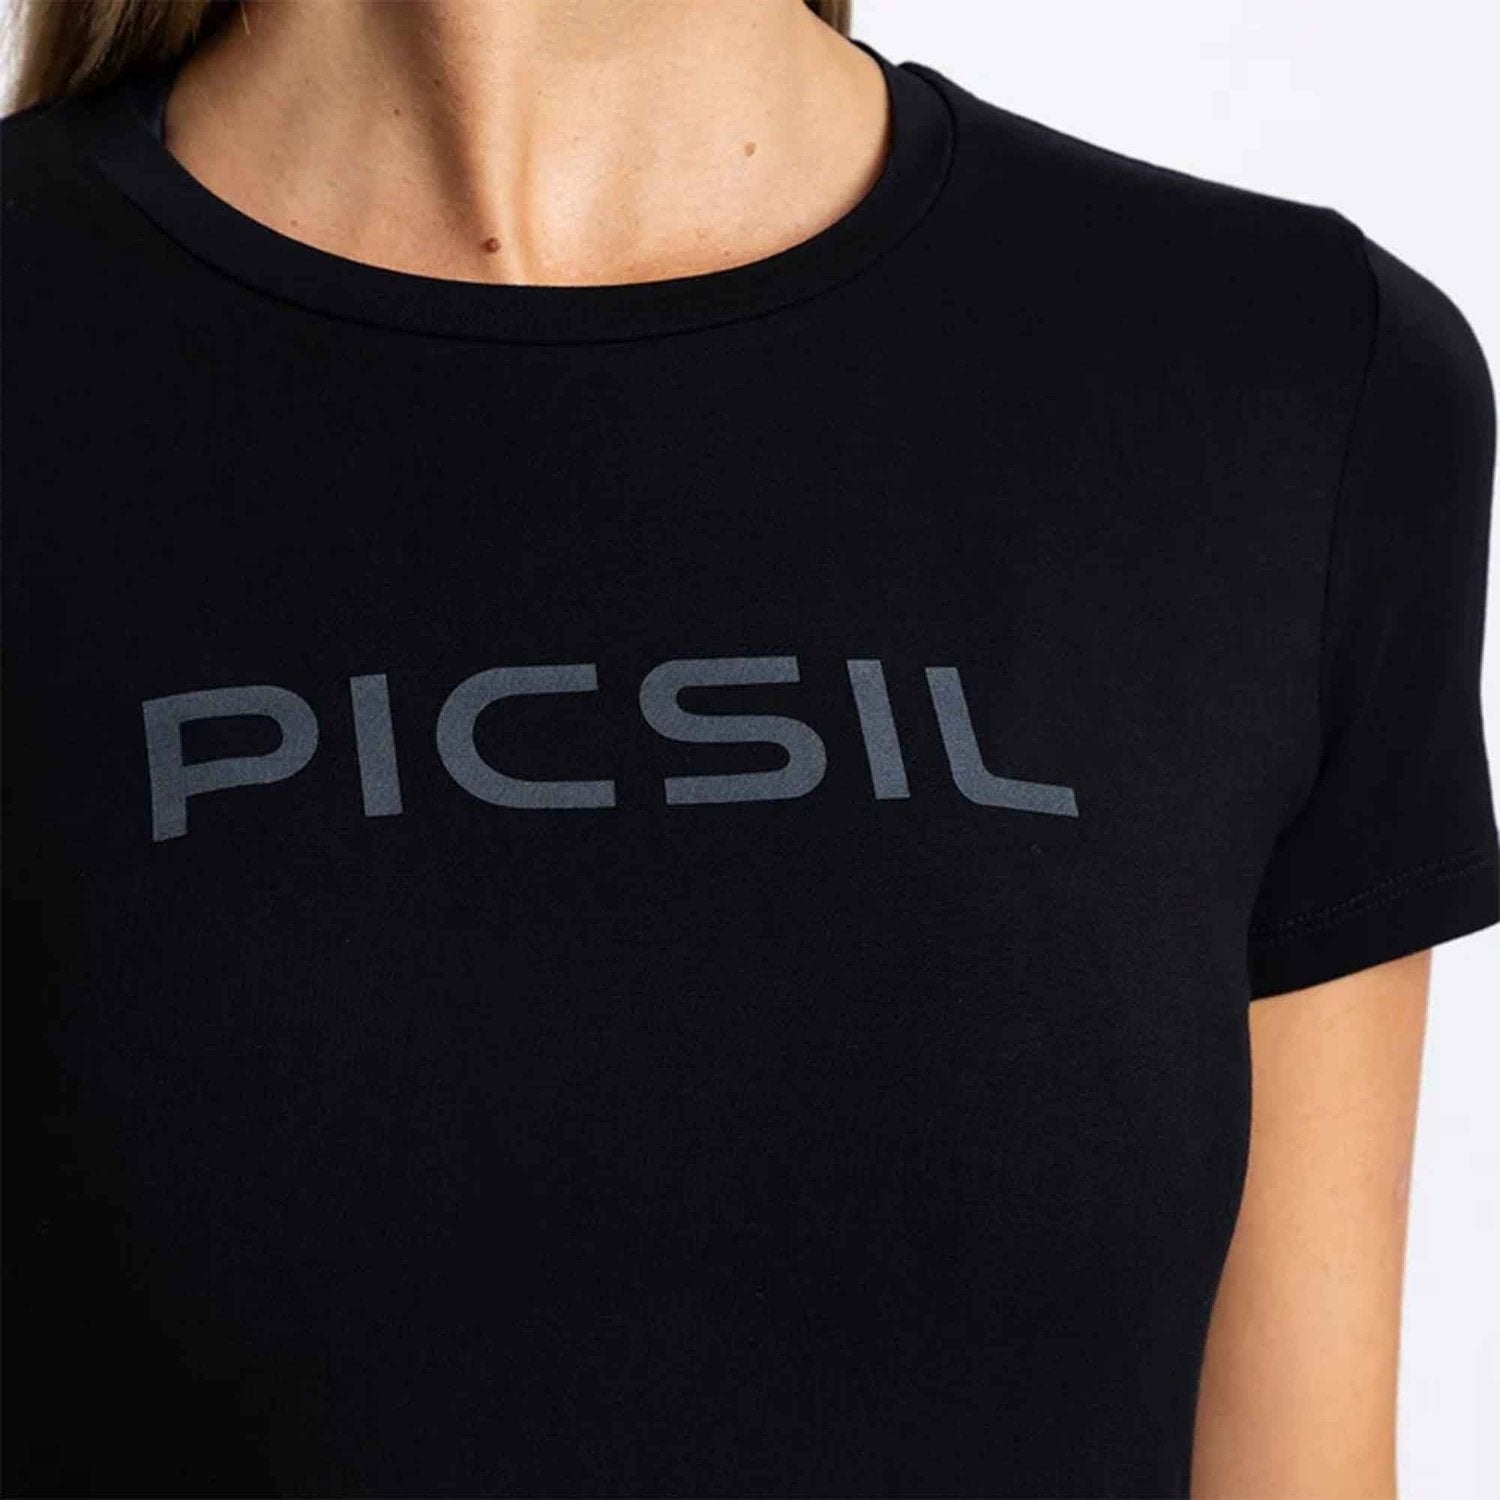 PicSil Damen Sport T-Shirt (Tee Core 0.2) Schwarz kaufen bei HighPowered.ch